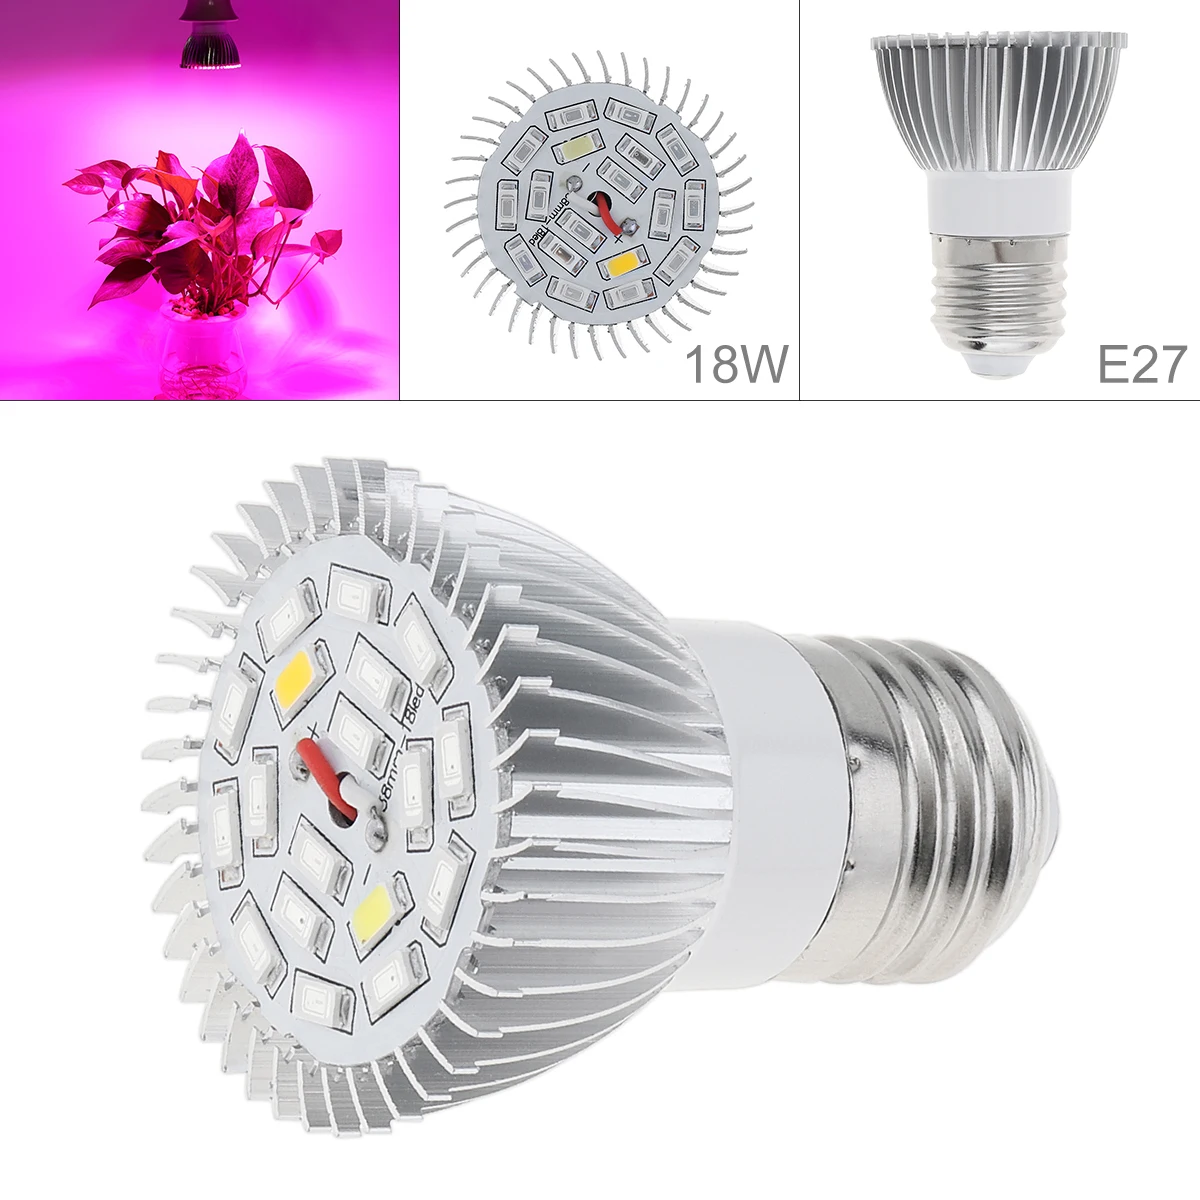 

Светодиодная лампа для выращивания растений, 18 Вт, E27, лампа полного спектра для выращивания растений, лампа для овощей и гидропонных систем